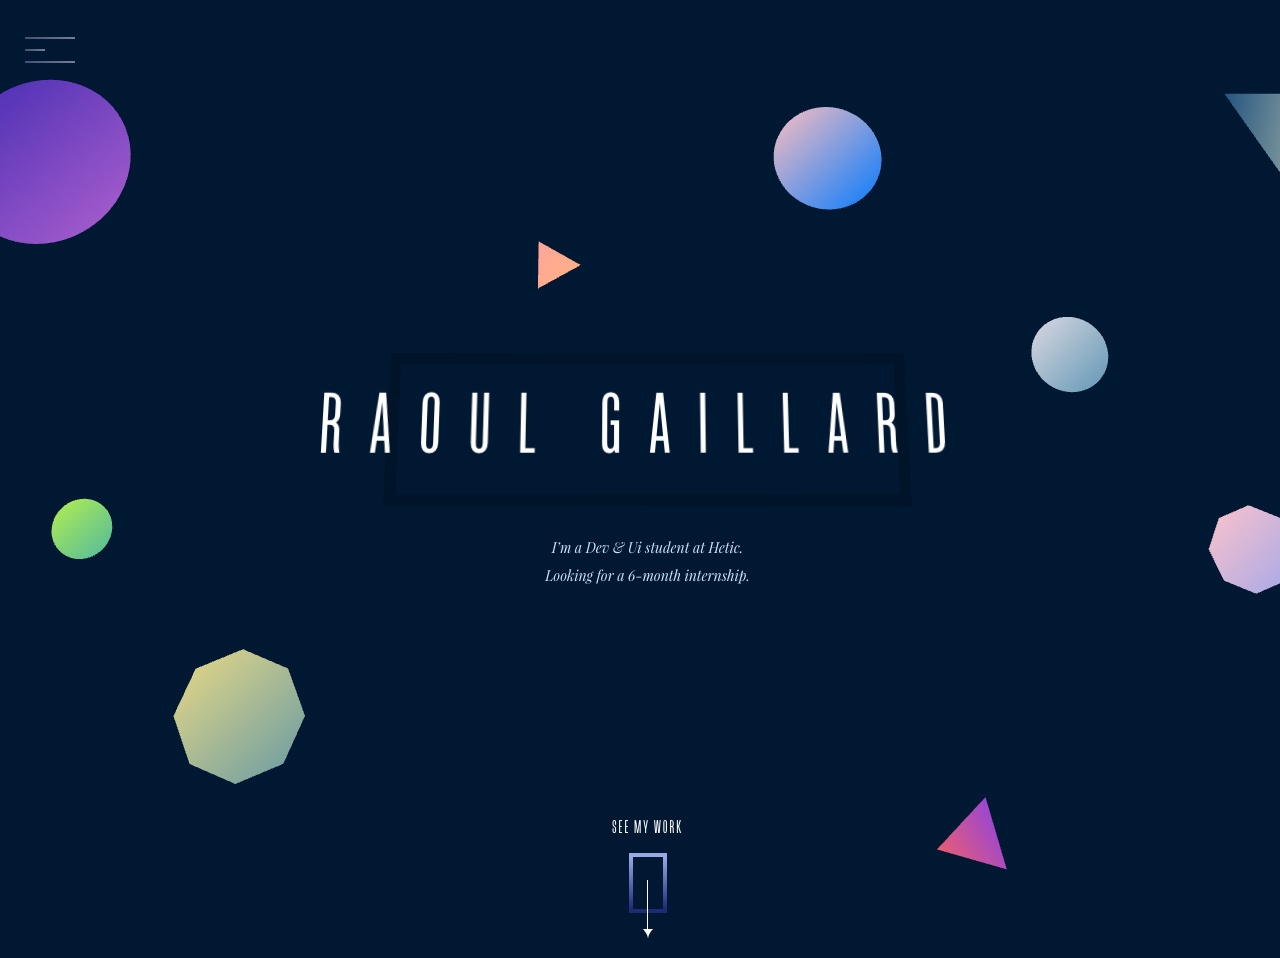 Raoul Gaillard – Front-end developer and Ui designer